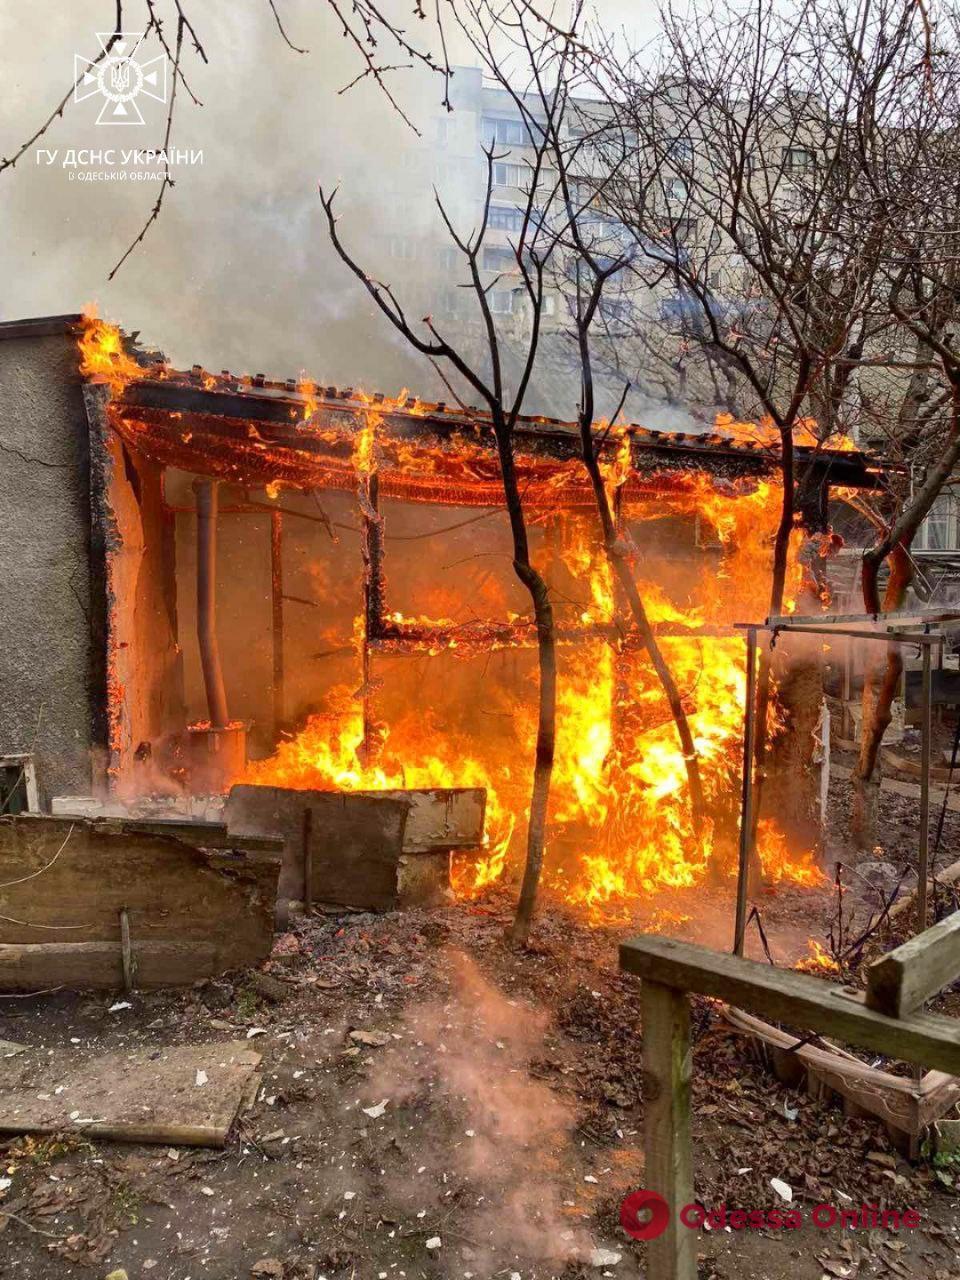 В Одессе произошел пожар из-за неправильной эксплуатации буржуйки